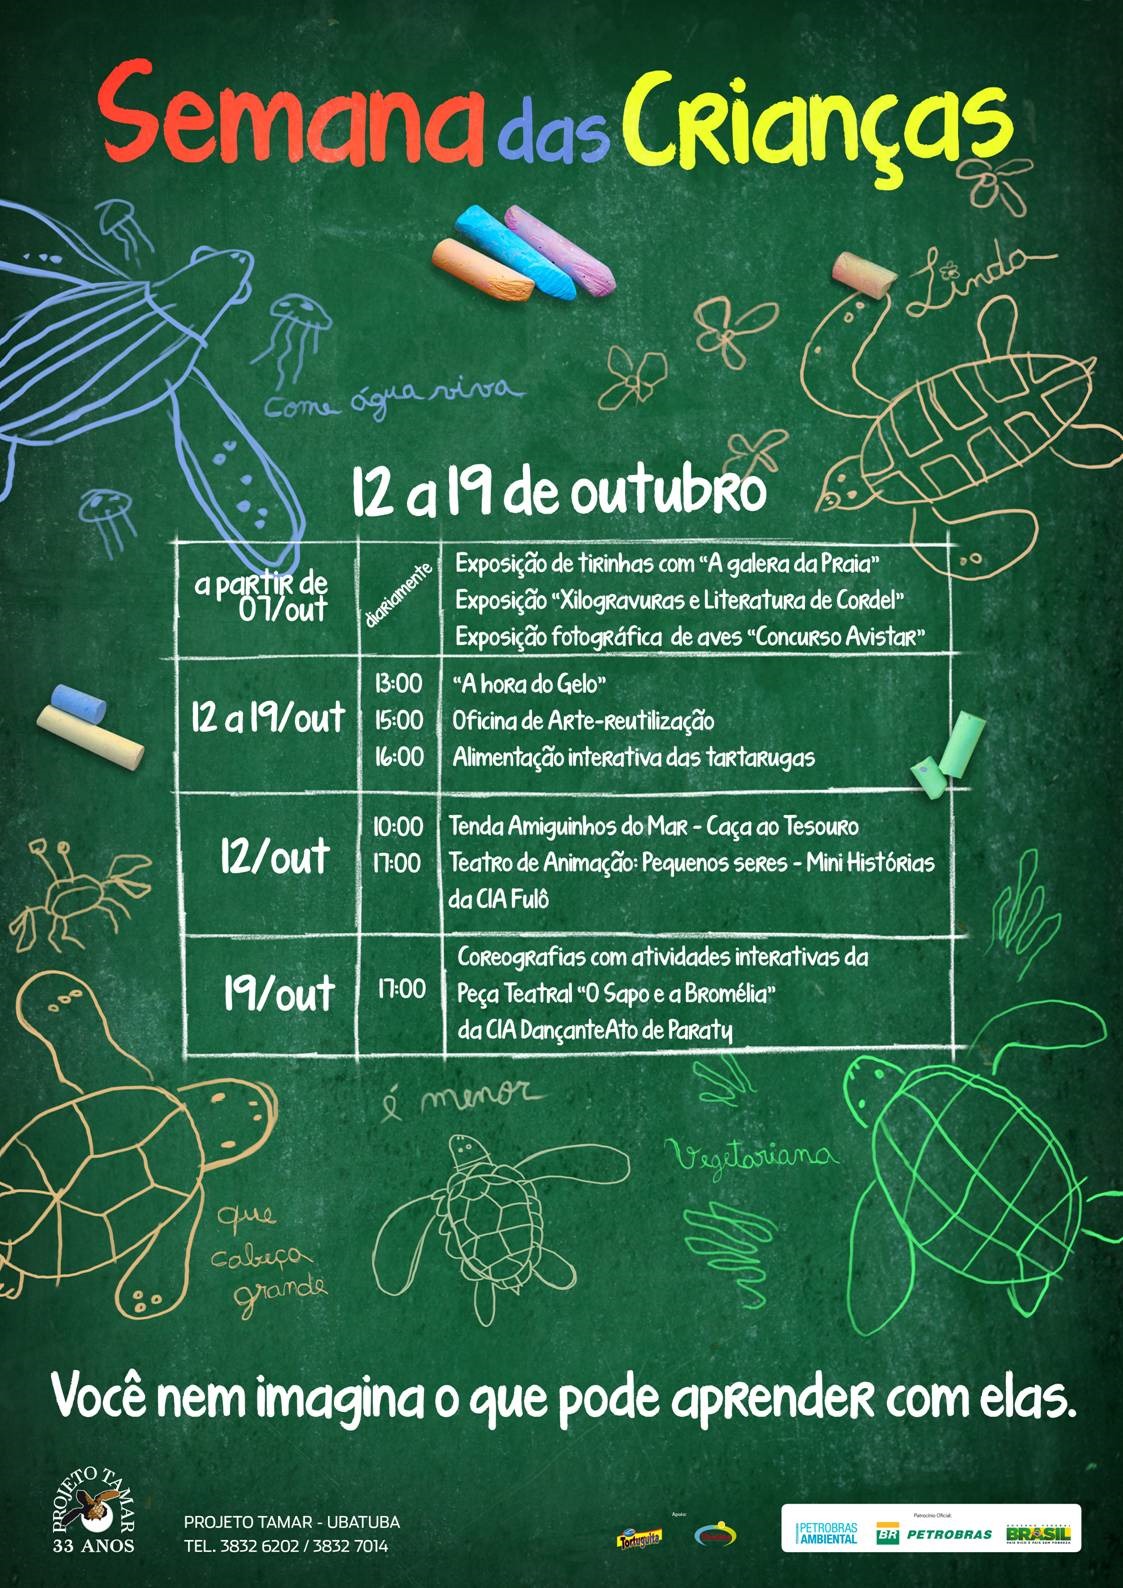 ICMBio - Centro Nacional de Pesquisa e Conservação de Mamíferos Aquáticos -  CMA comemora Dia das Crianças com ilustrações